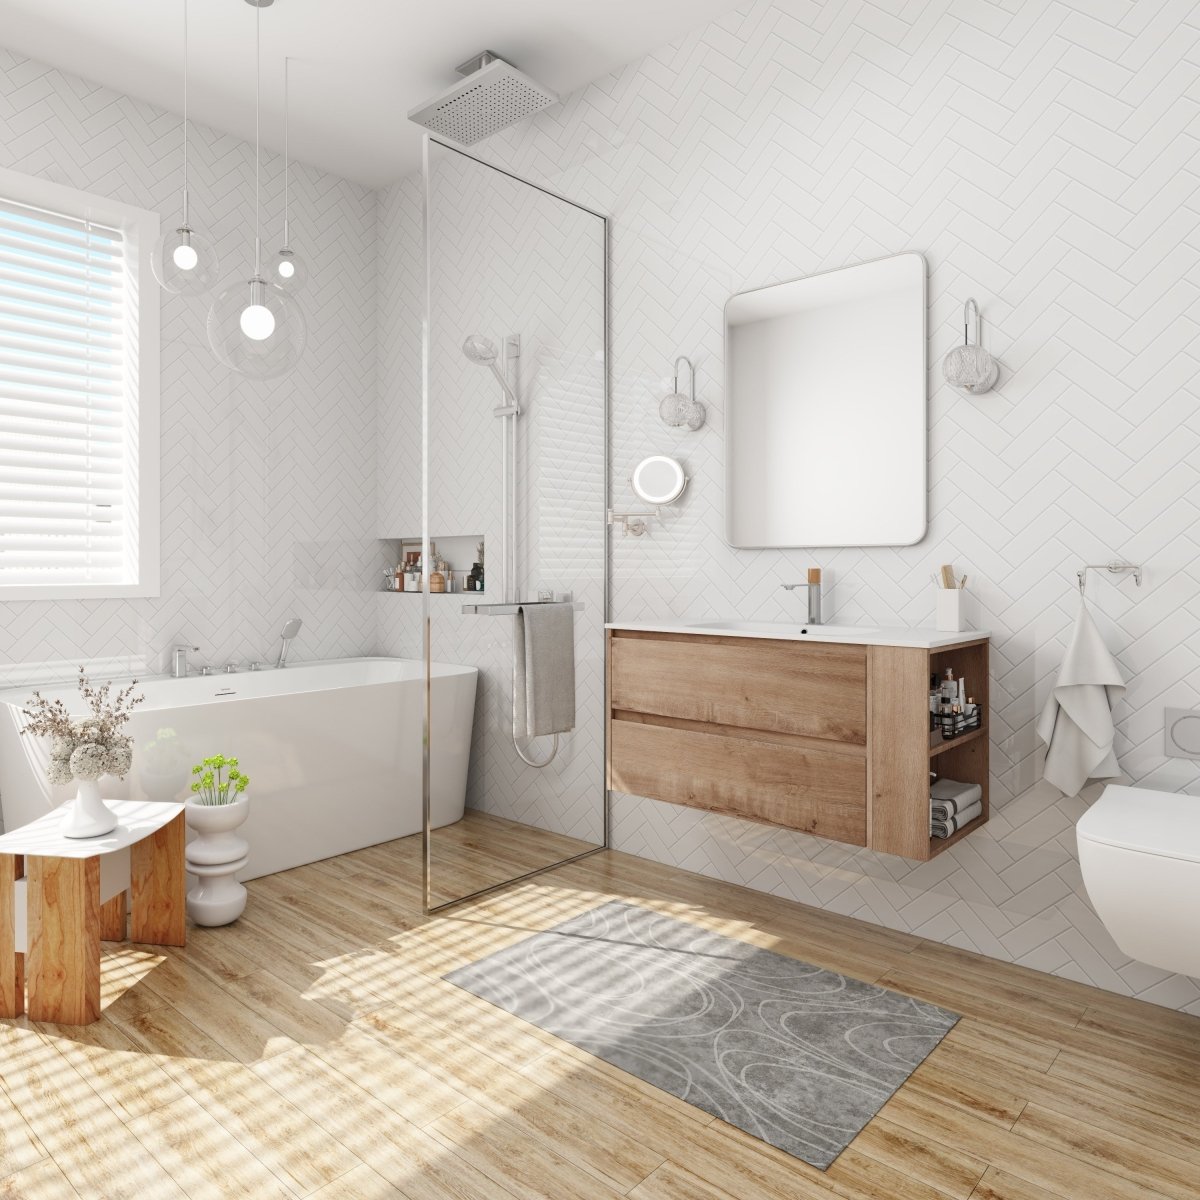 ExBrite 36" Wall Mounting Bathroom Vanity With Gel Sink